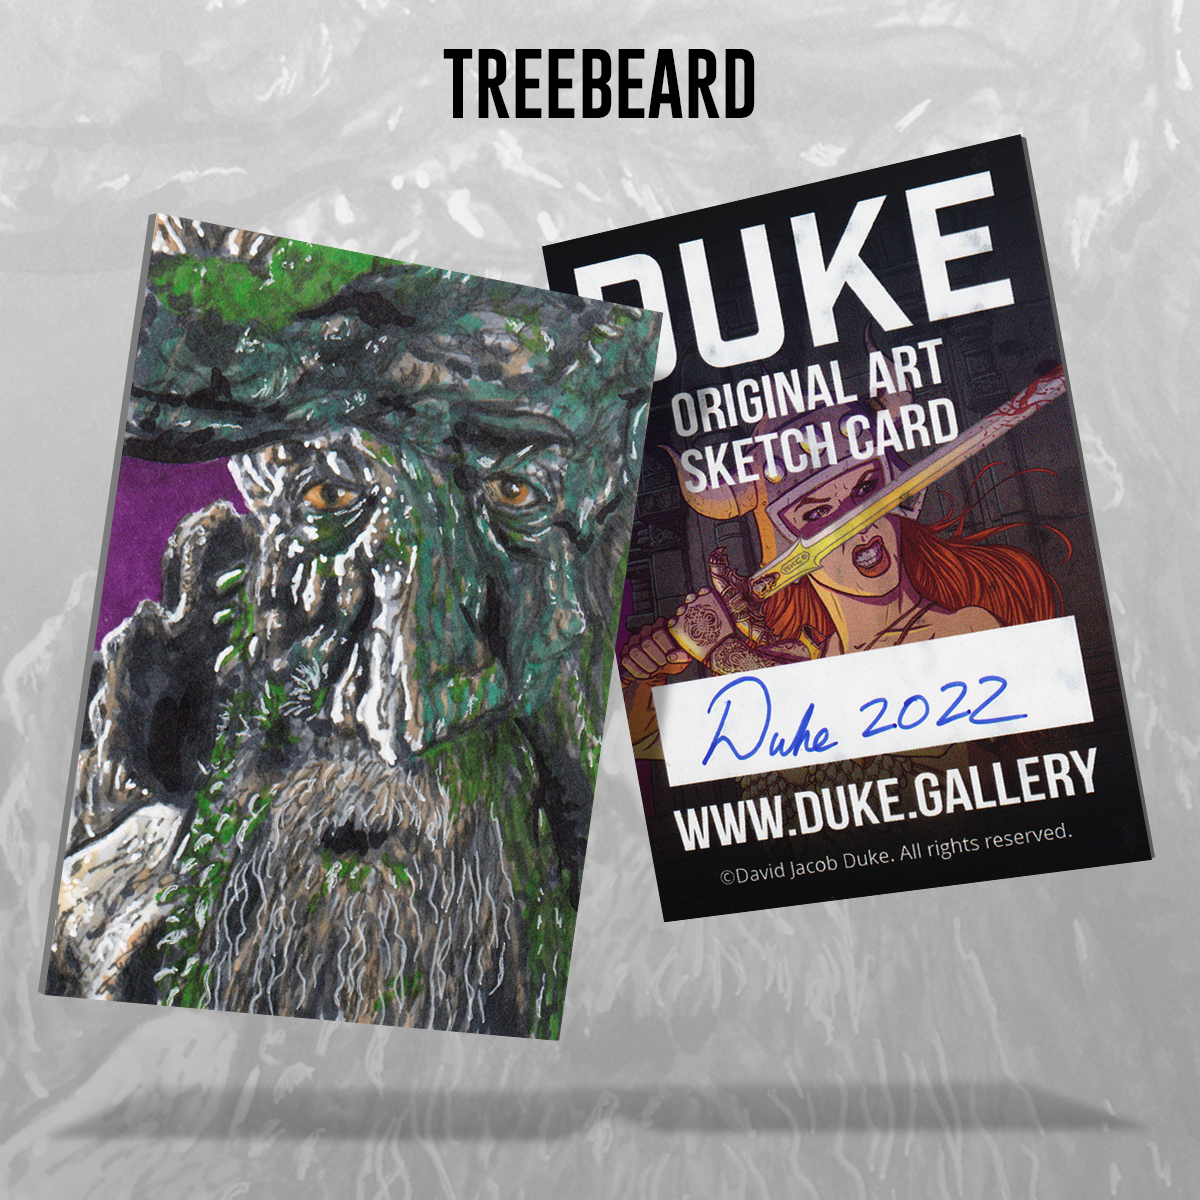 Treebeard Sketch Card by Duke